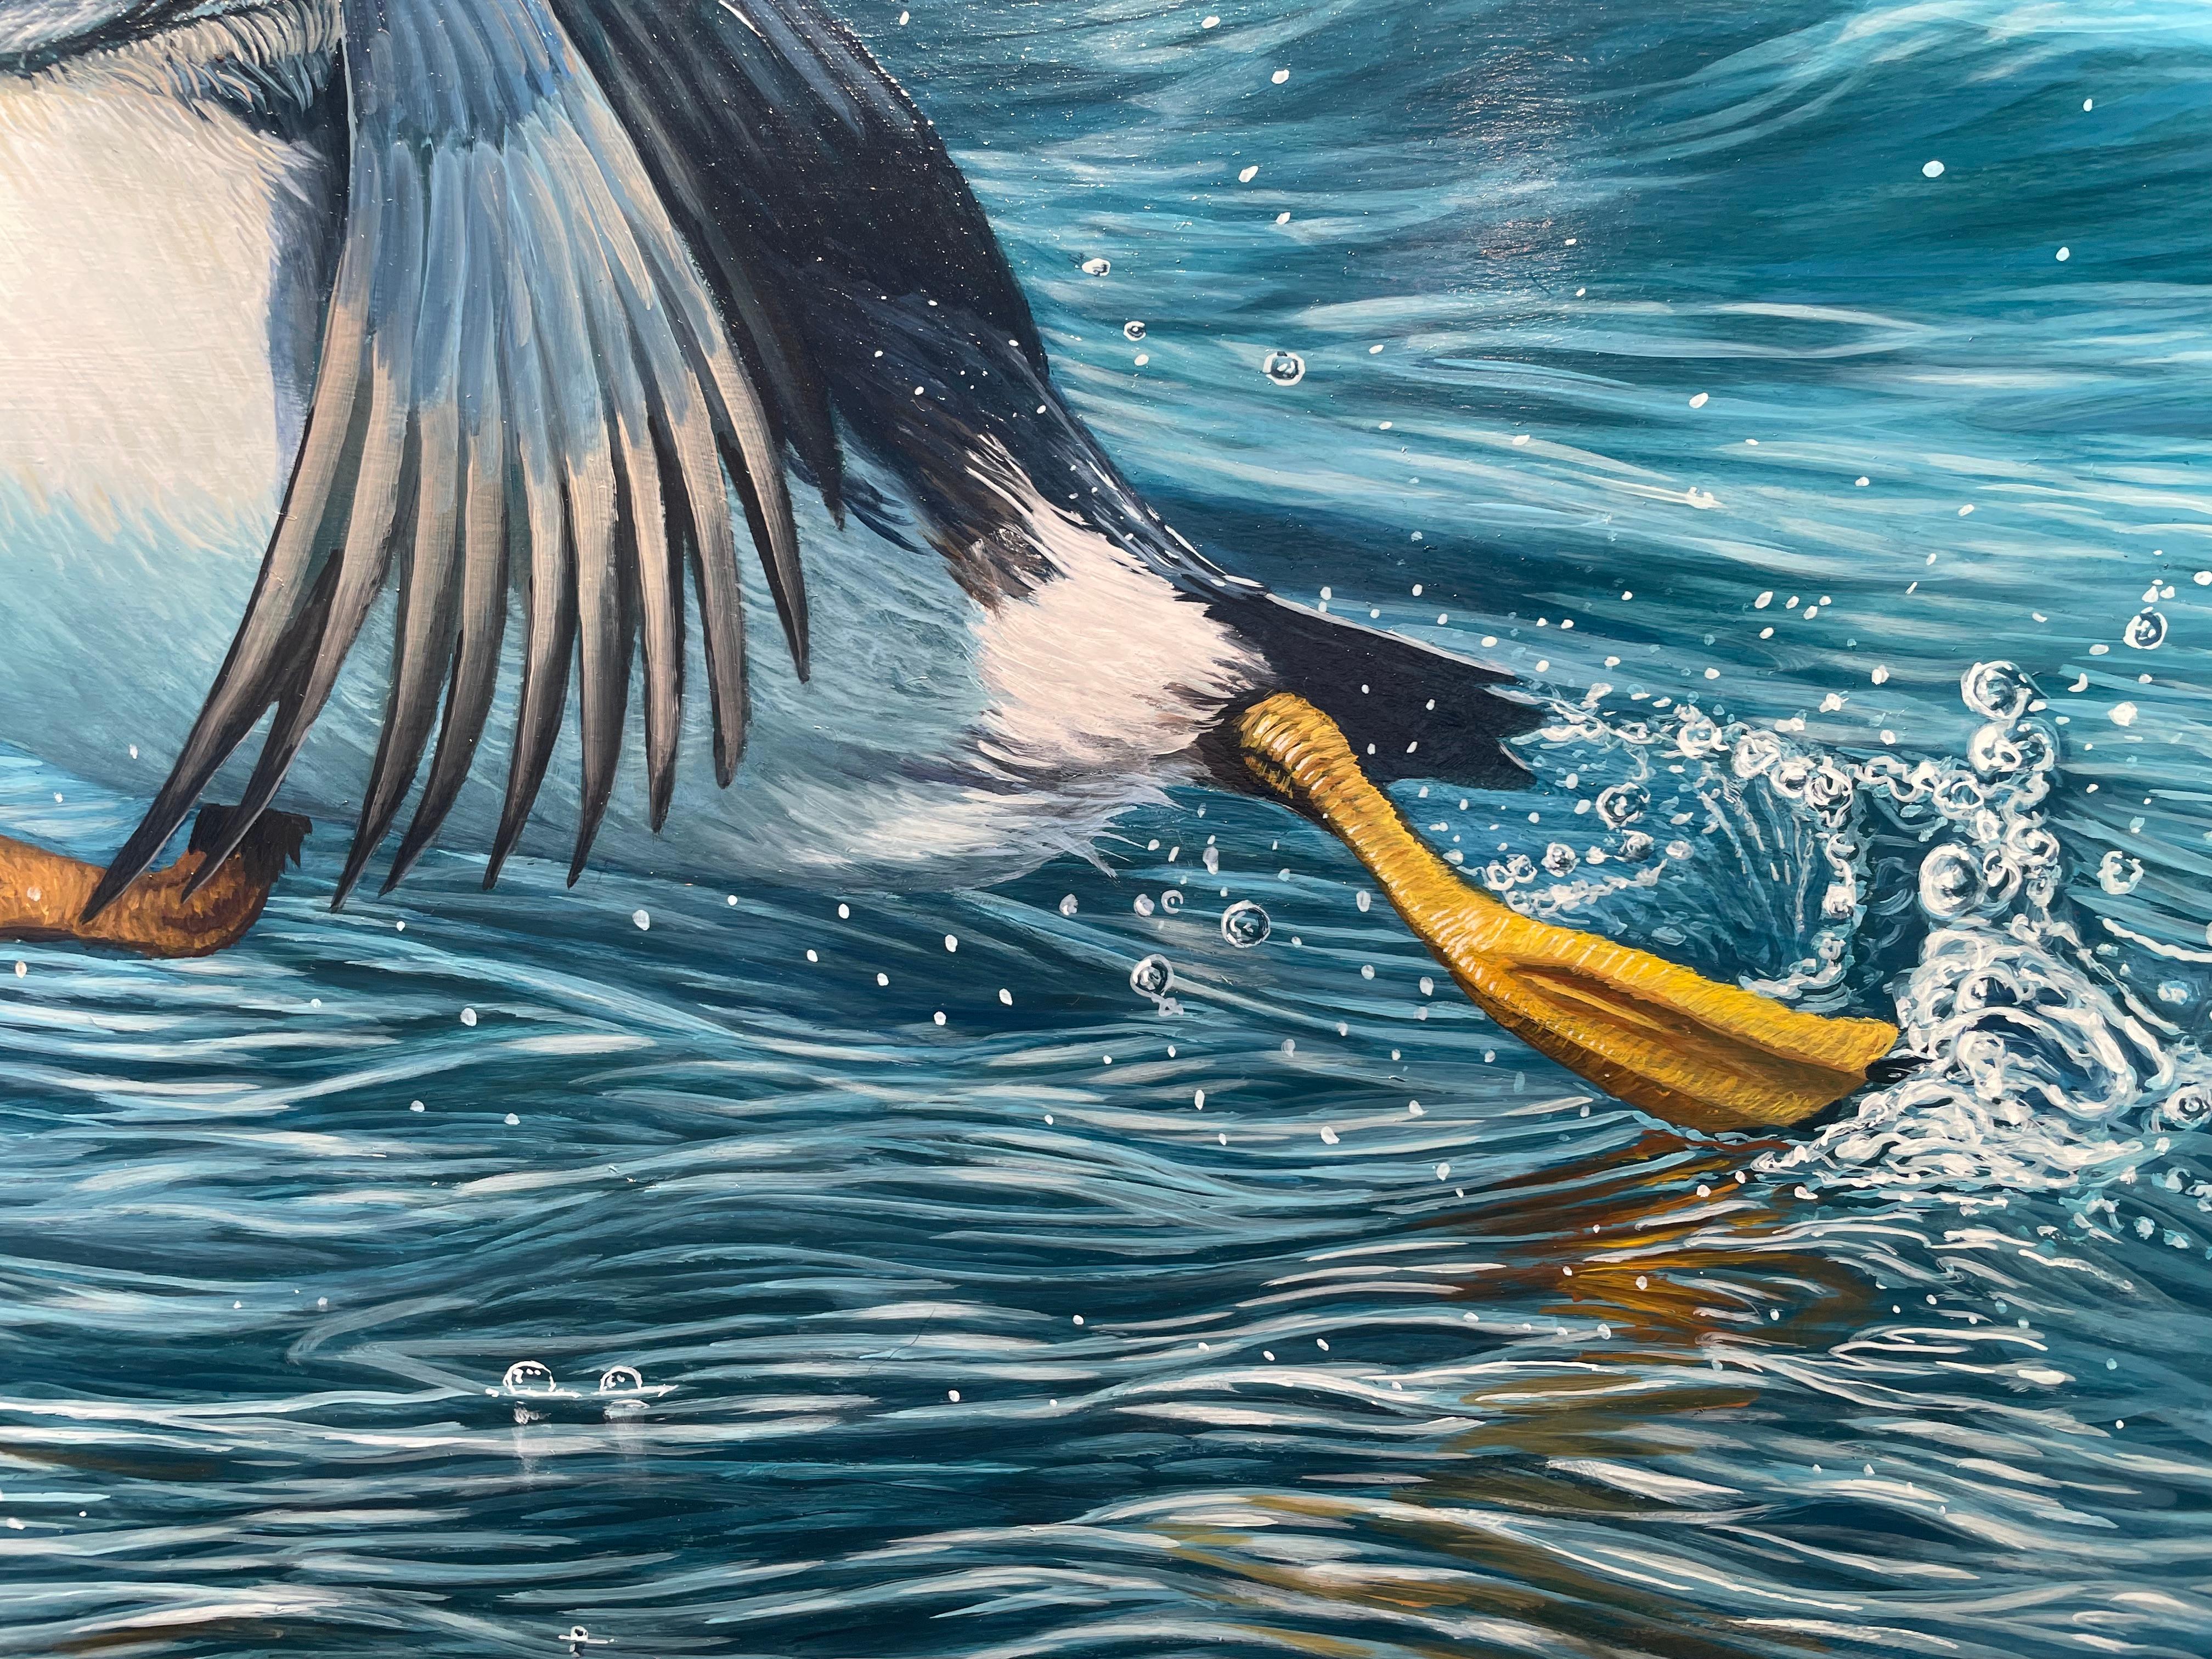 Fotorealistisches Wildtiergemälde „Leap of Faith“ eines Puffins auf leuchtend blauem Wasser (Fotorealismus), Painting, von Ben Waddams